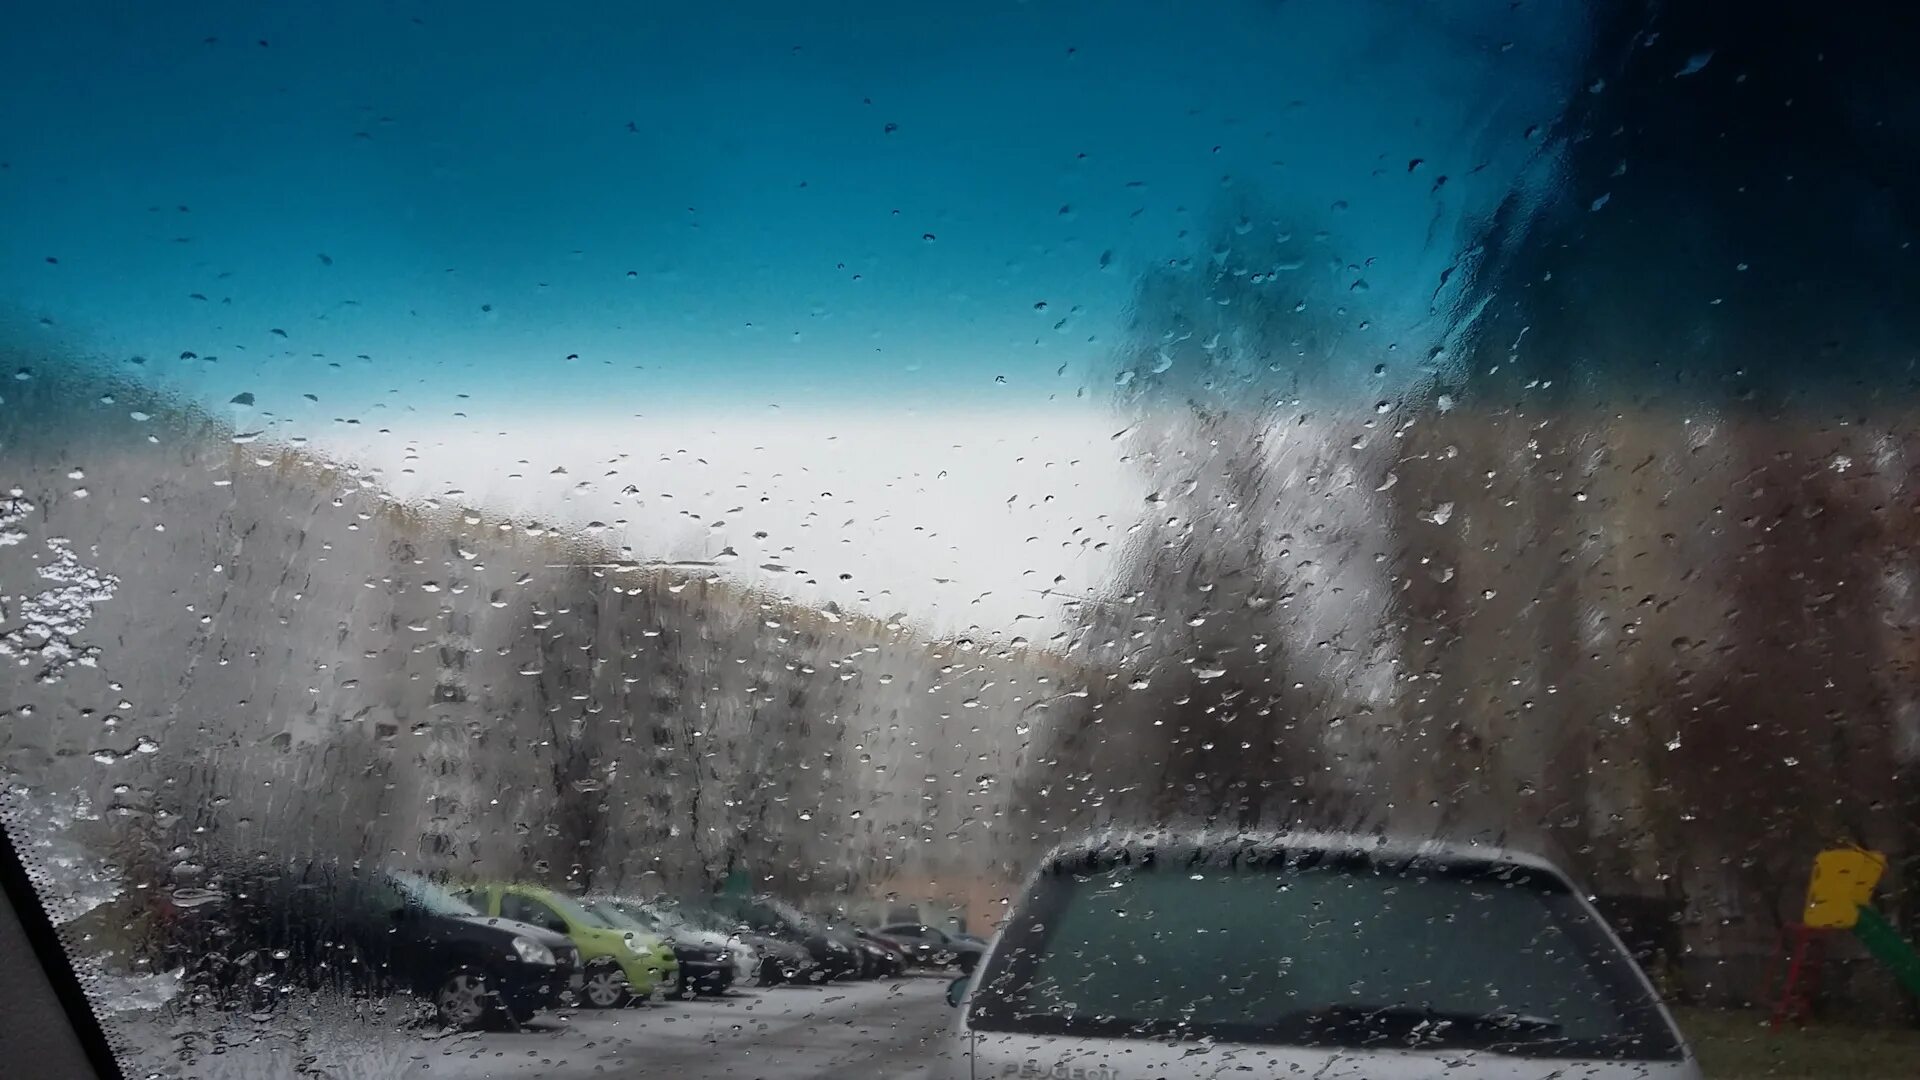 Машина запотевает в дождь. Запотевшие стекла автомобиля. Фото запотевшего зеркала.